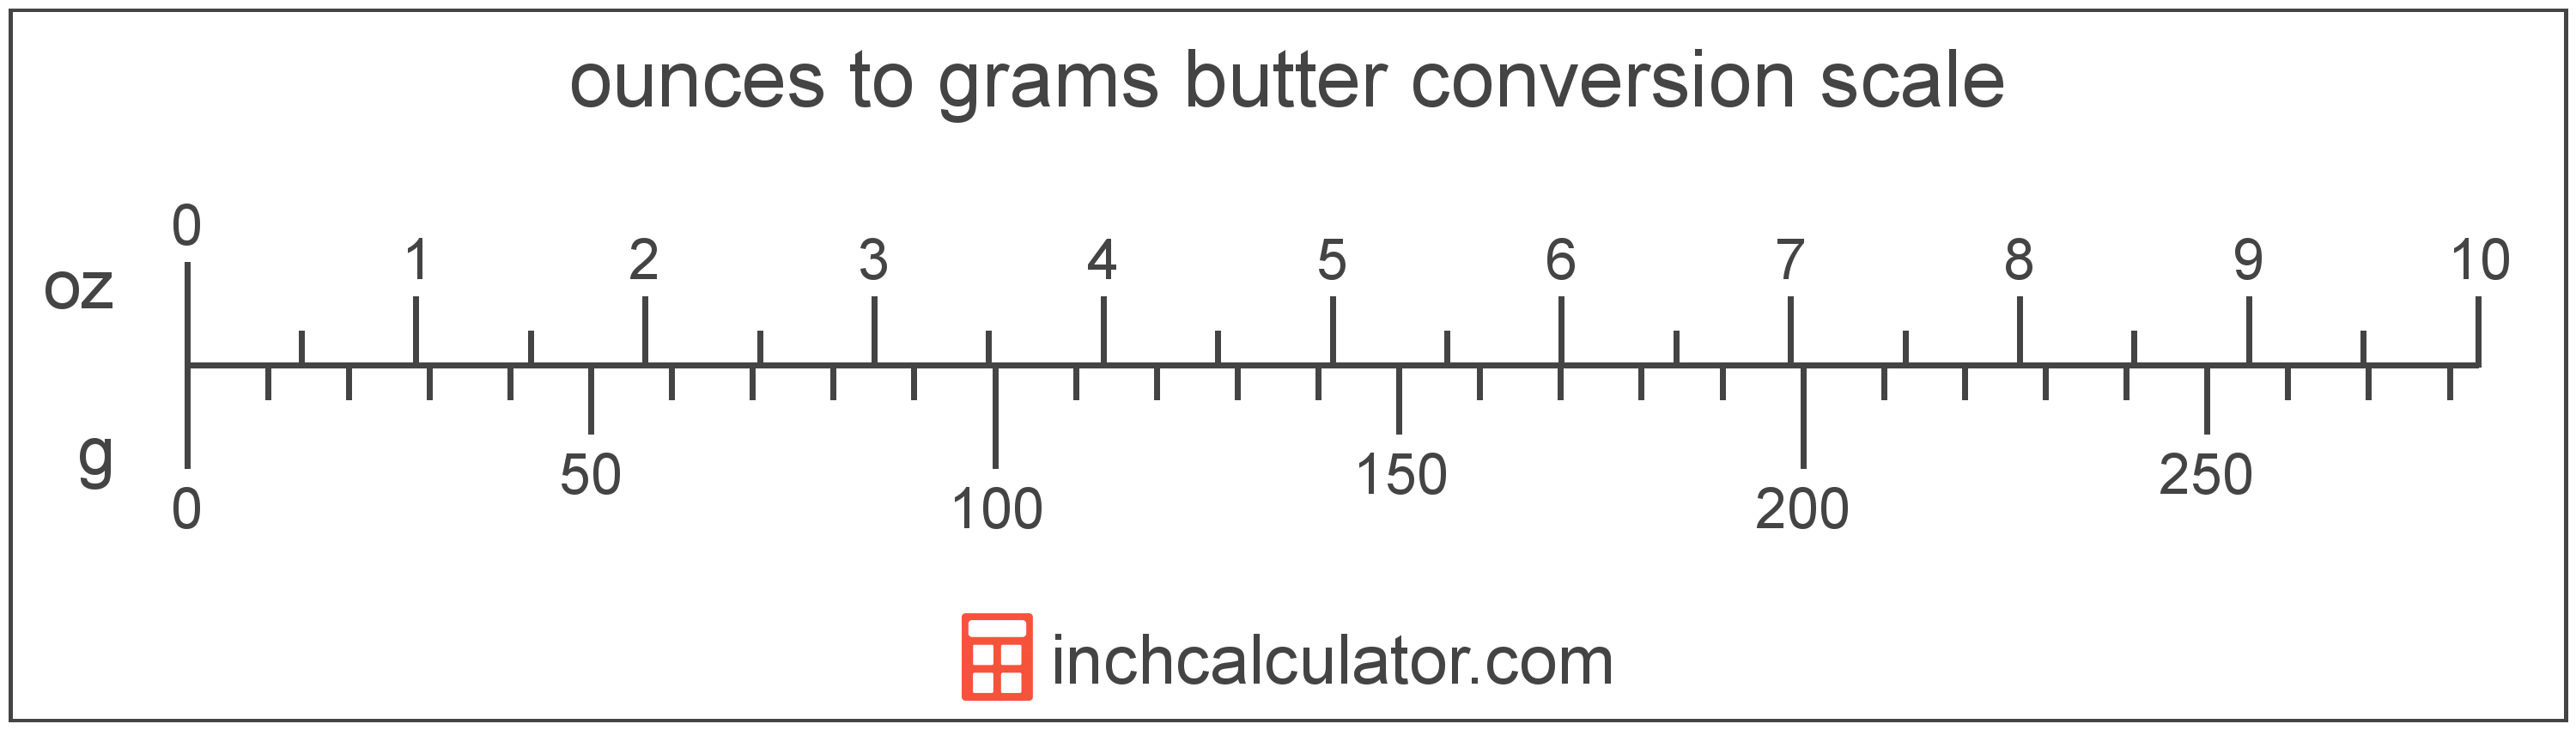 grams to ounces conversion calculator